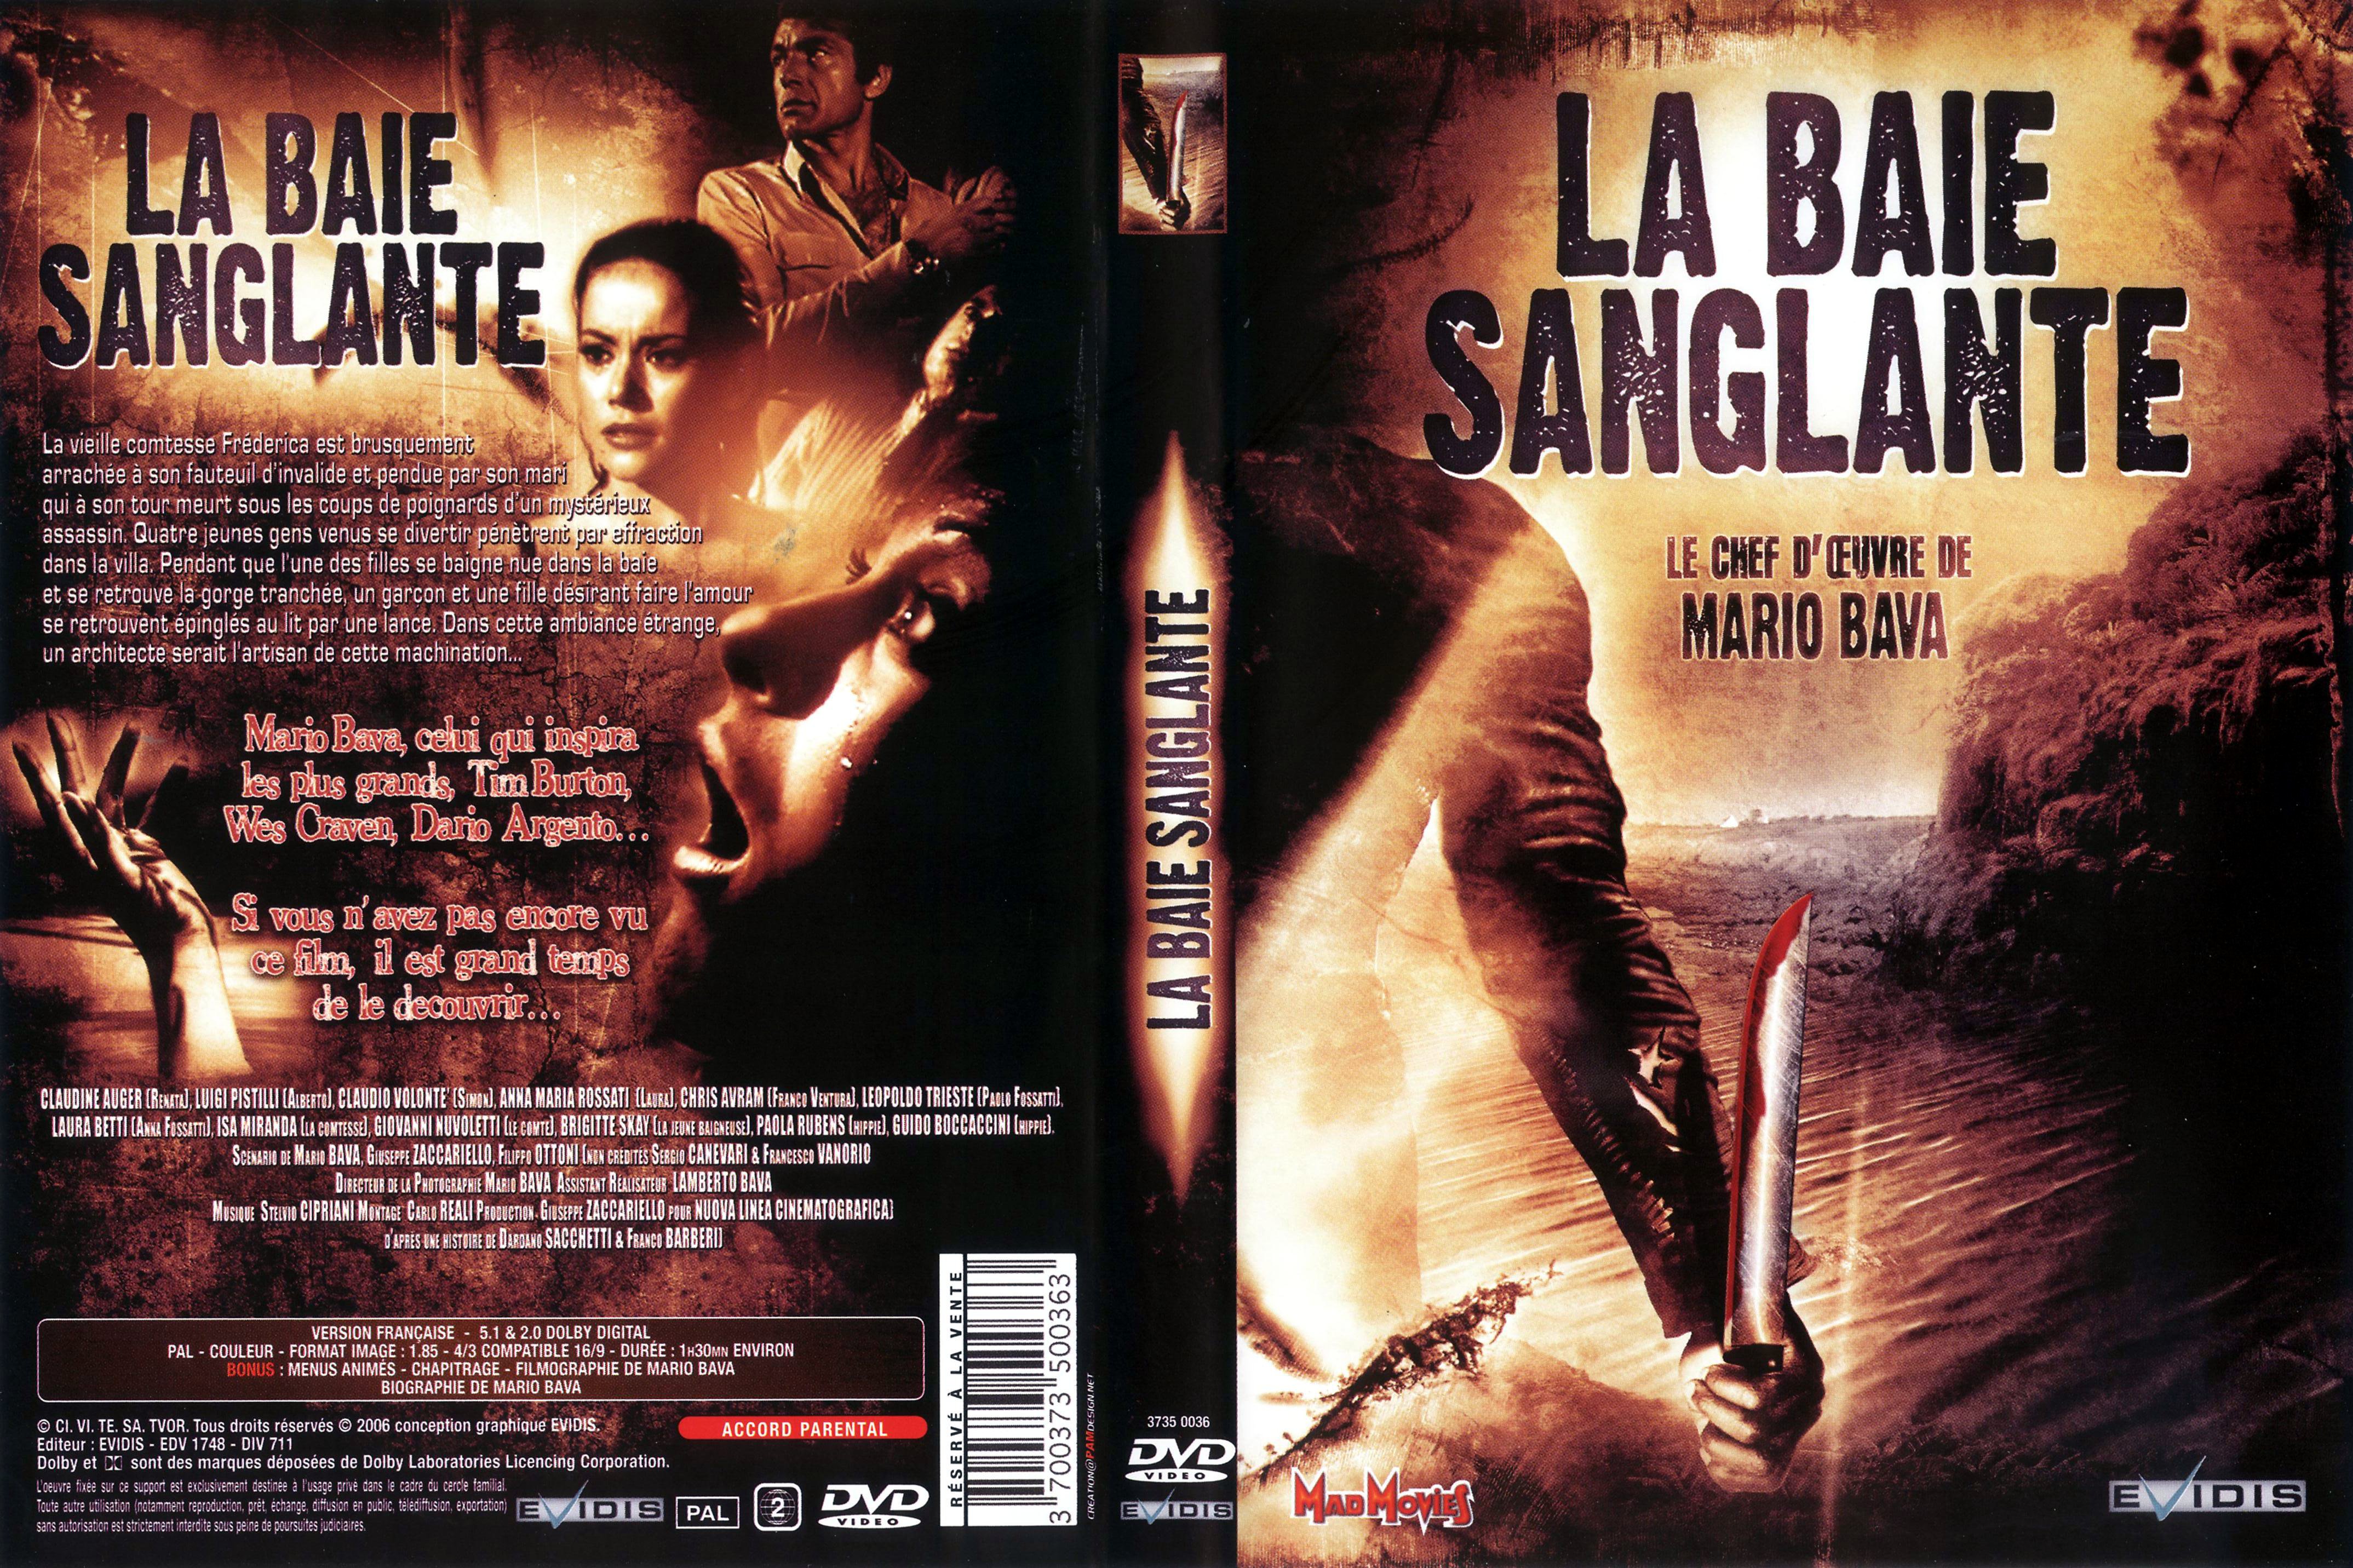 Jaquette DVD La baie sanglante